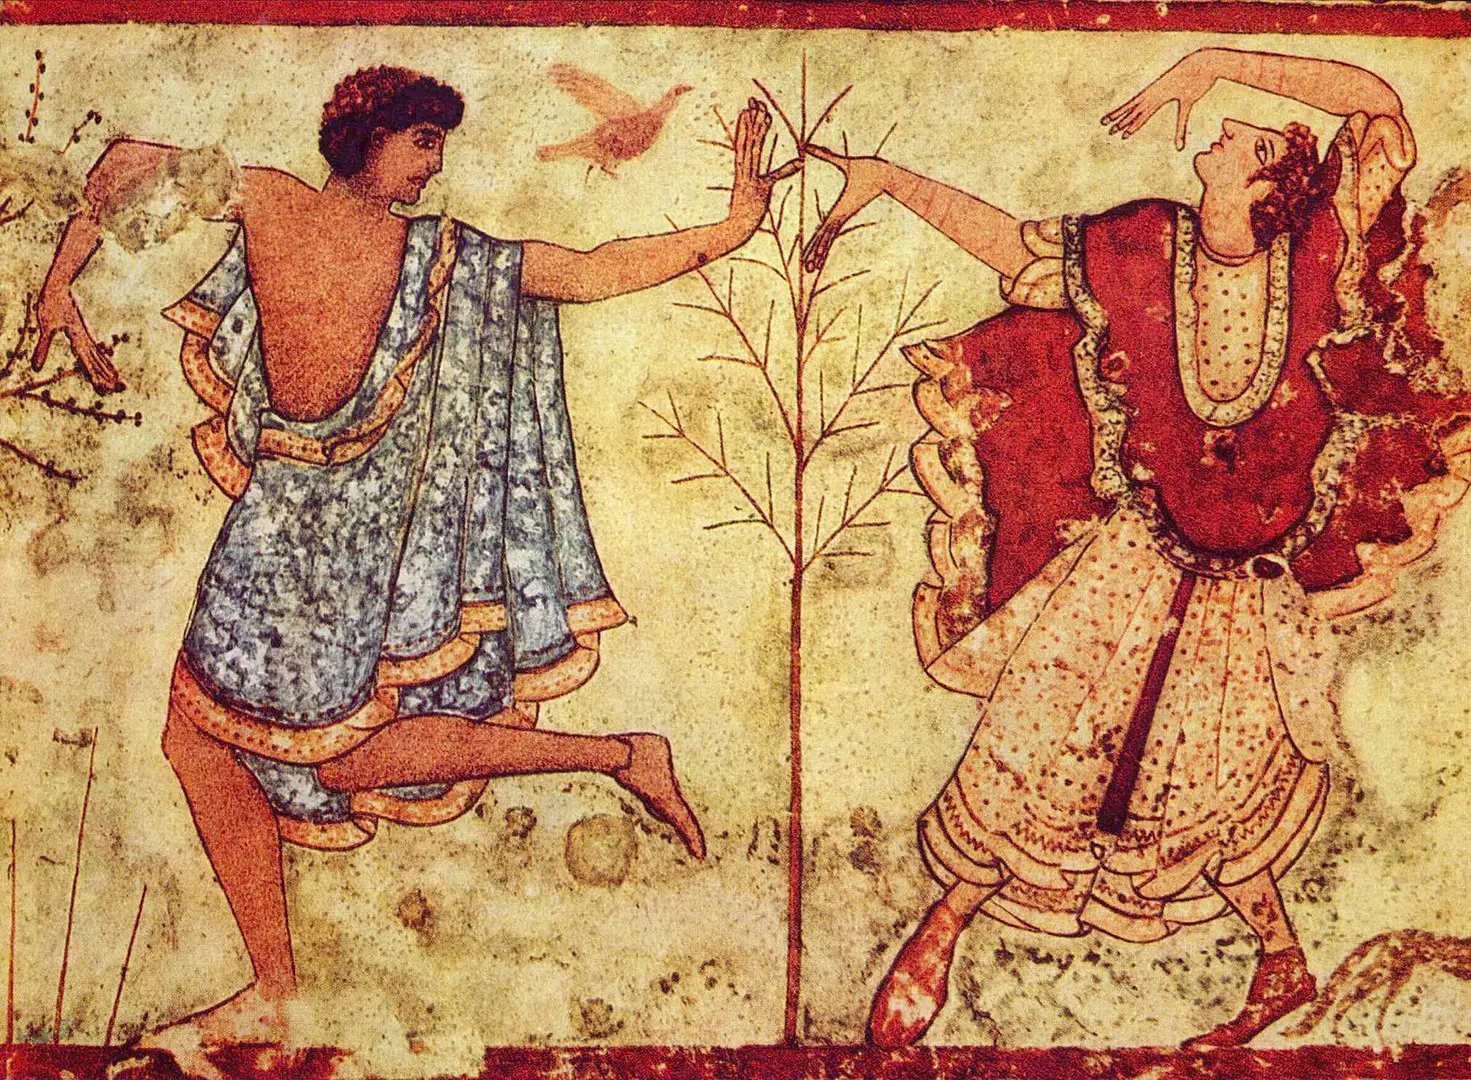 Historia de los antiguos etruscos: una cultura avanzada que gobernó la península itálica antes de los romanos